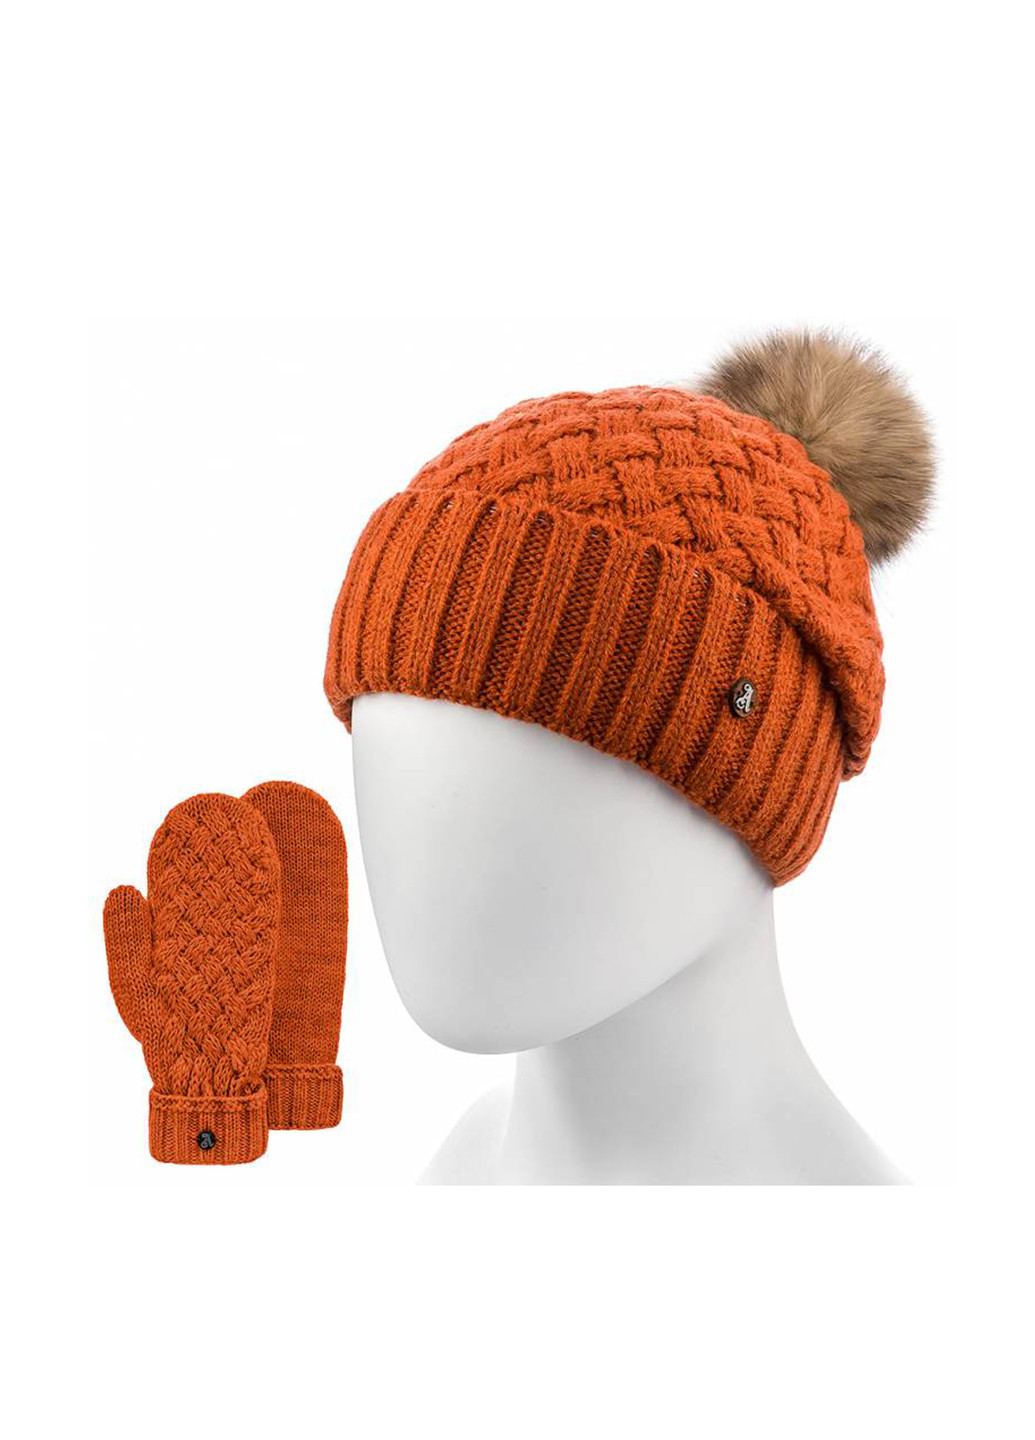 Рыжий зимний комплект (шапка, рукавицы) Atrics